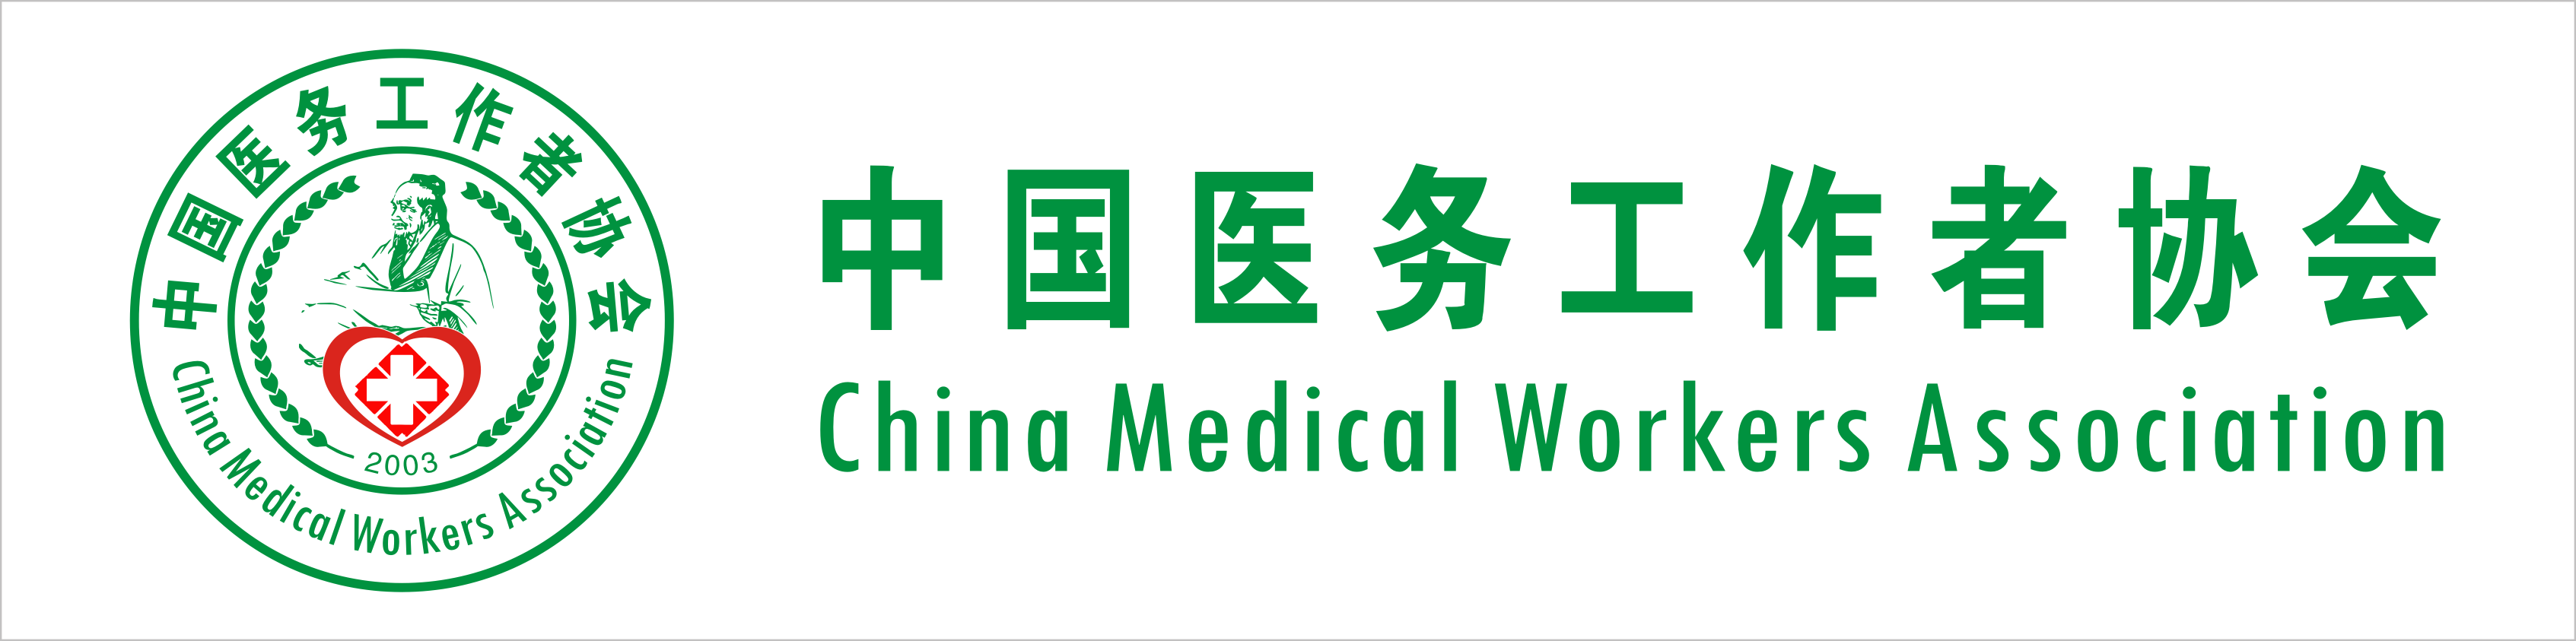 中國醫務工作者協會CI識別系統